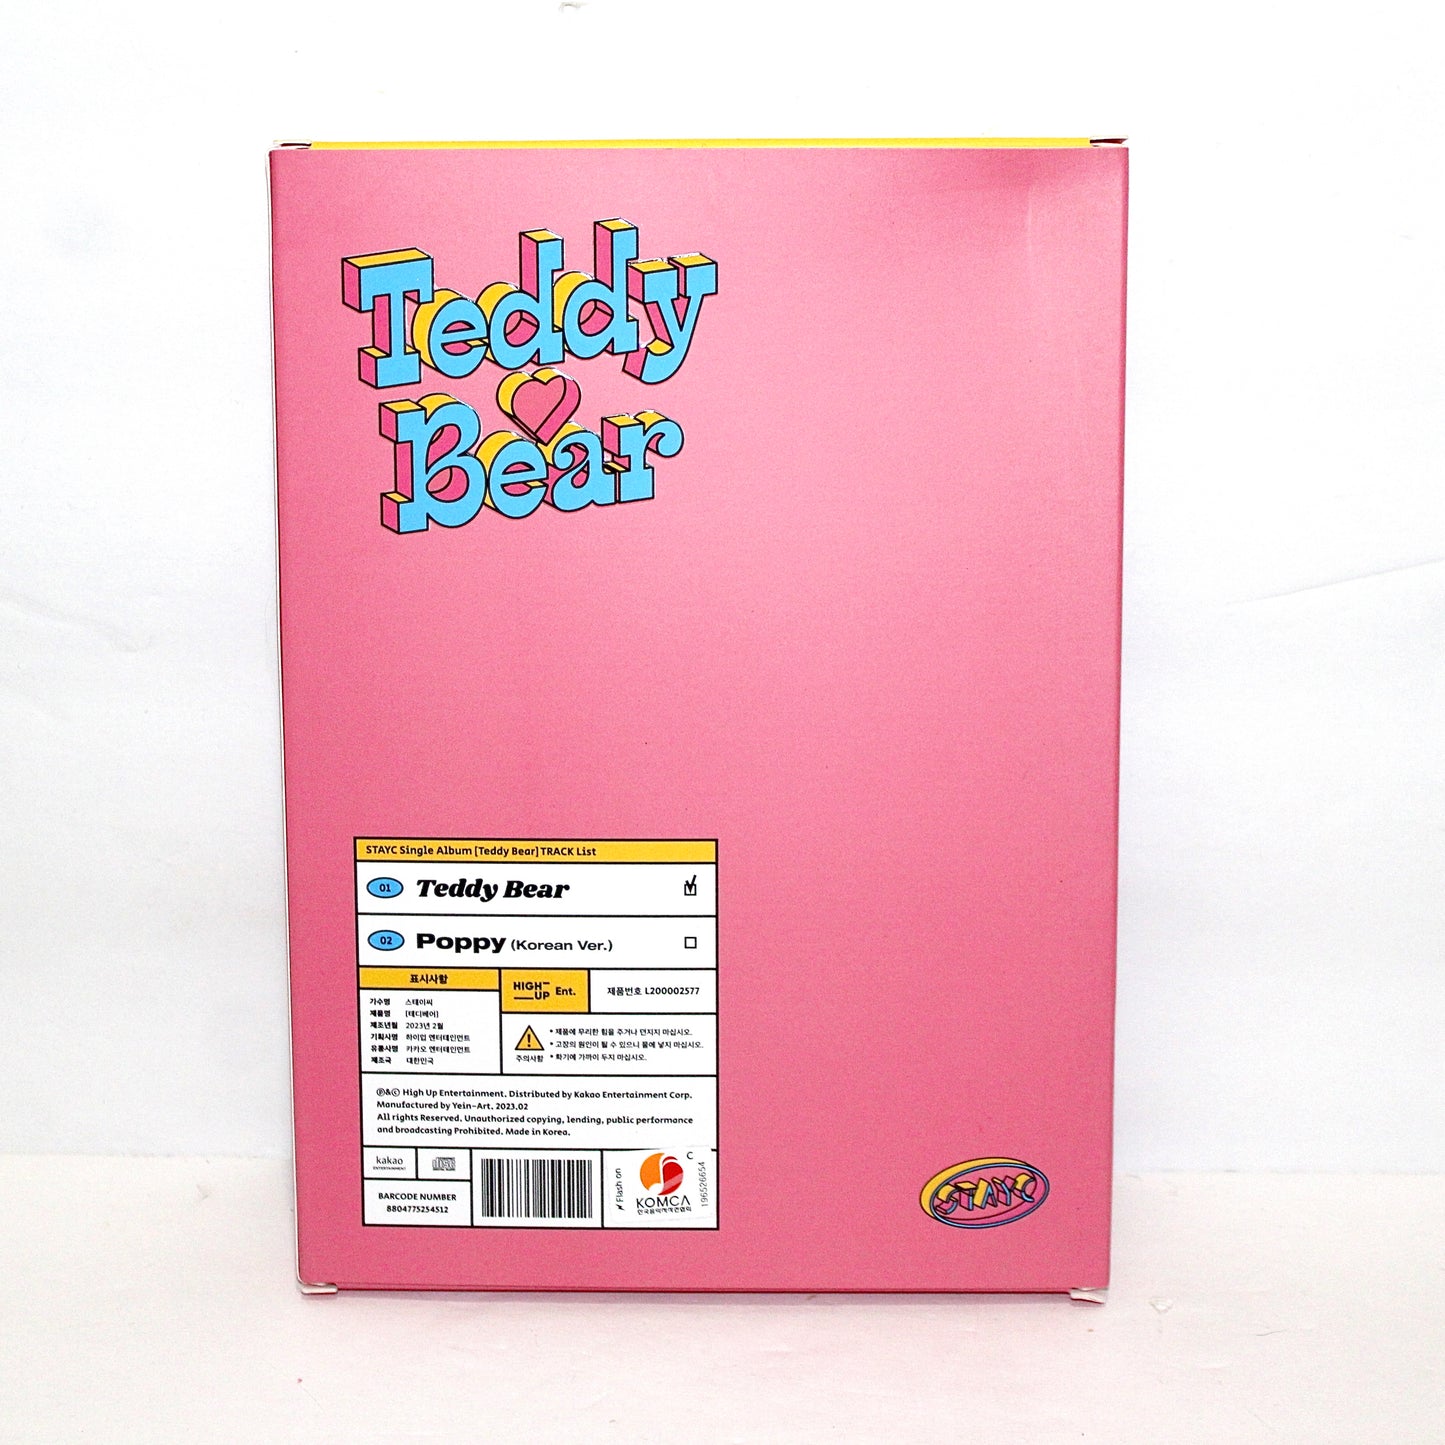 STAYC 4th Single Album: Teddy Bear | Fun Ver.